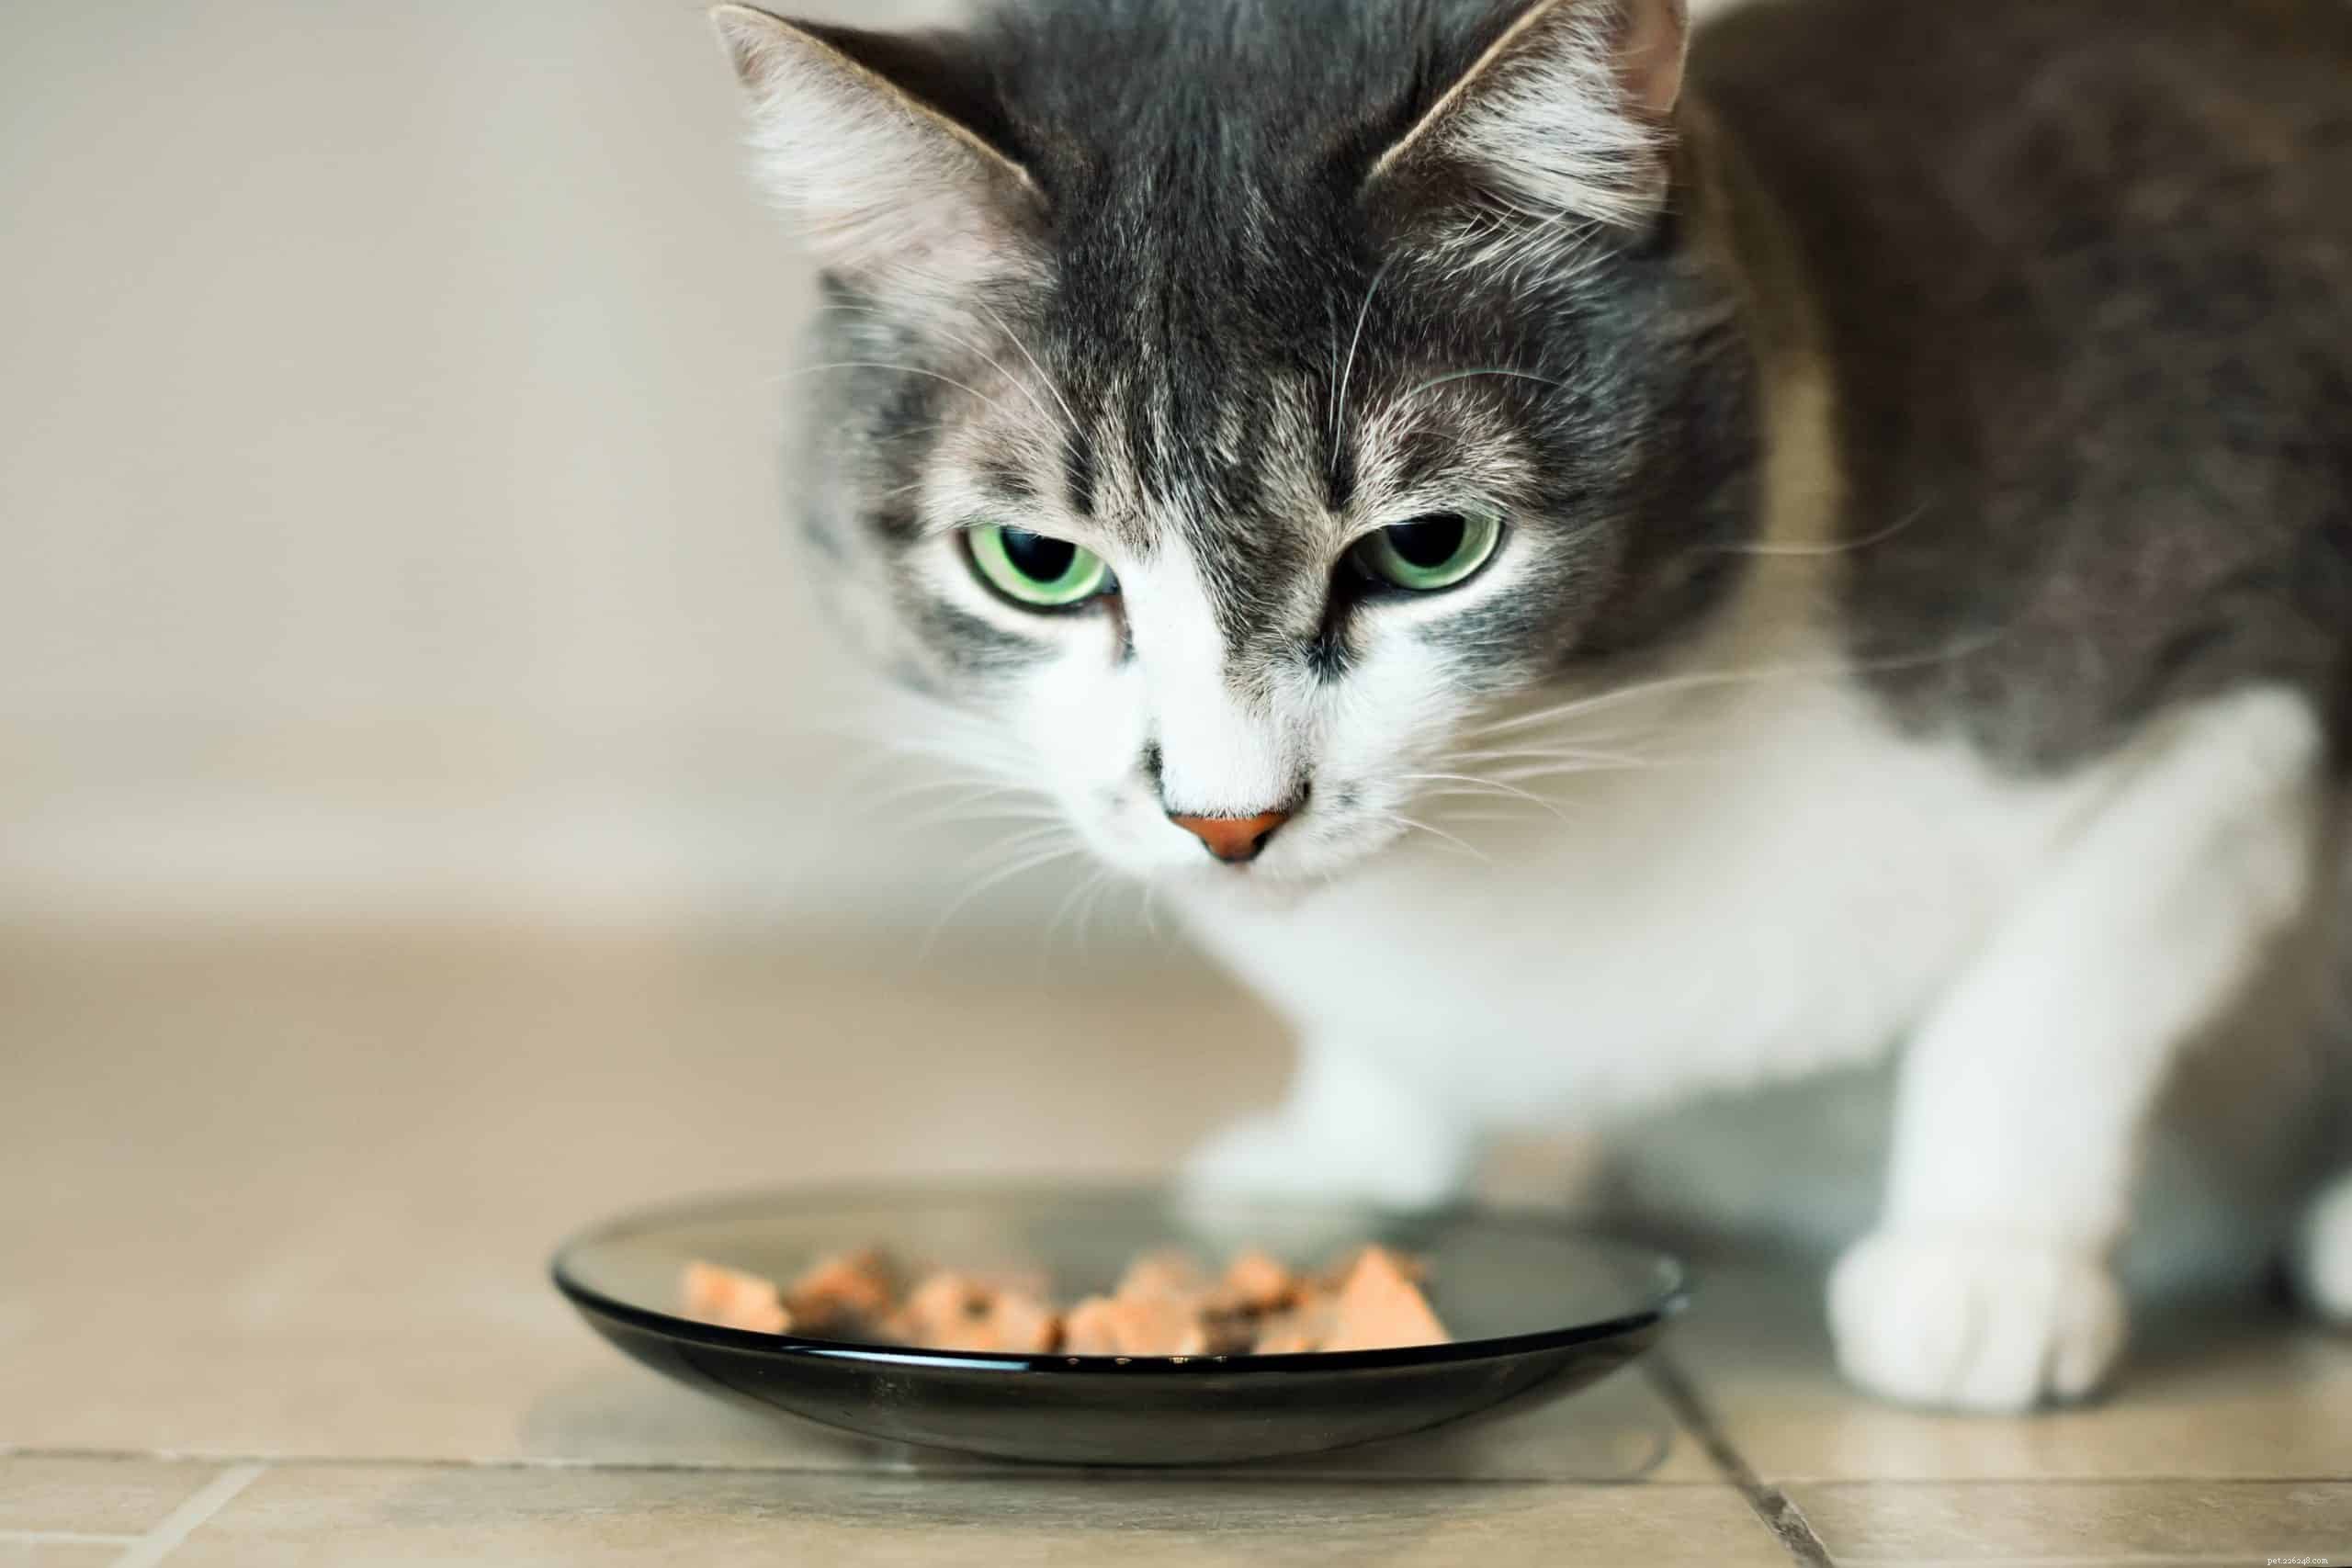 Perché alcuni gatti sono così schizzinosi riguardo al cibo?